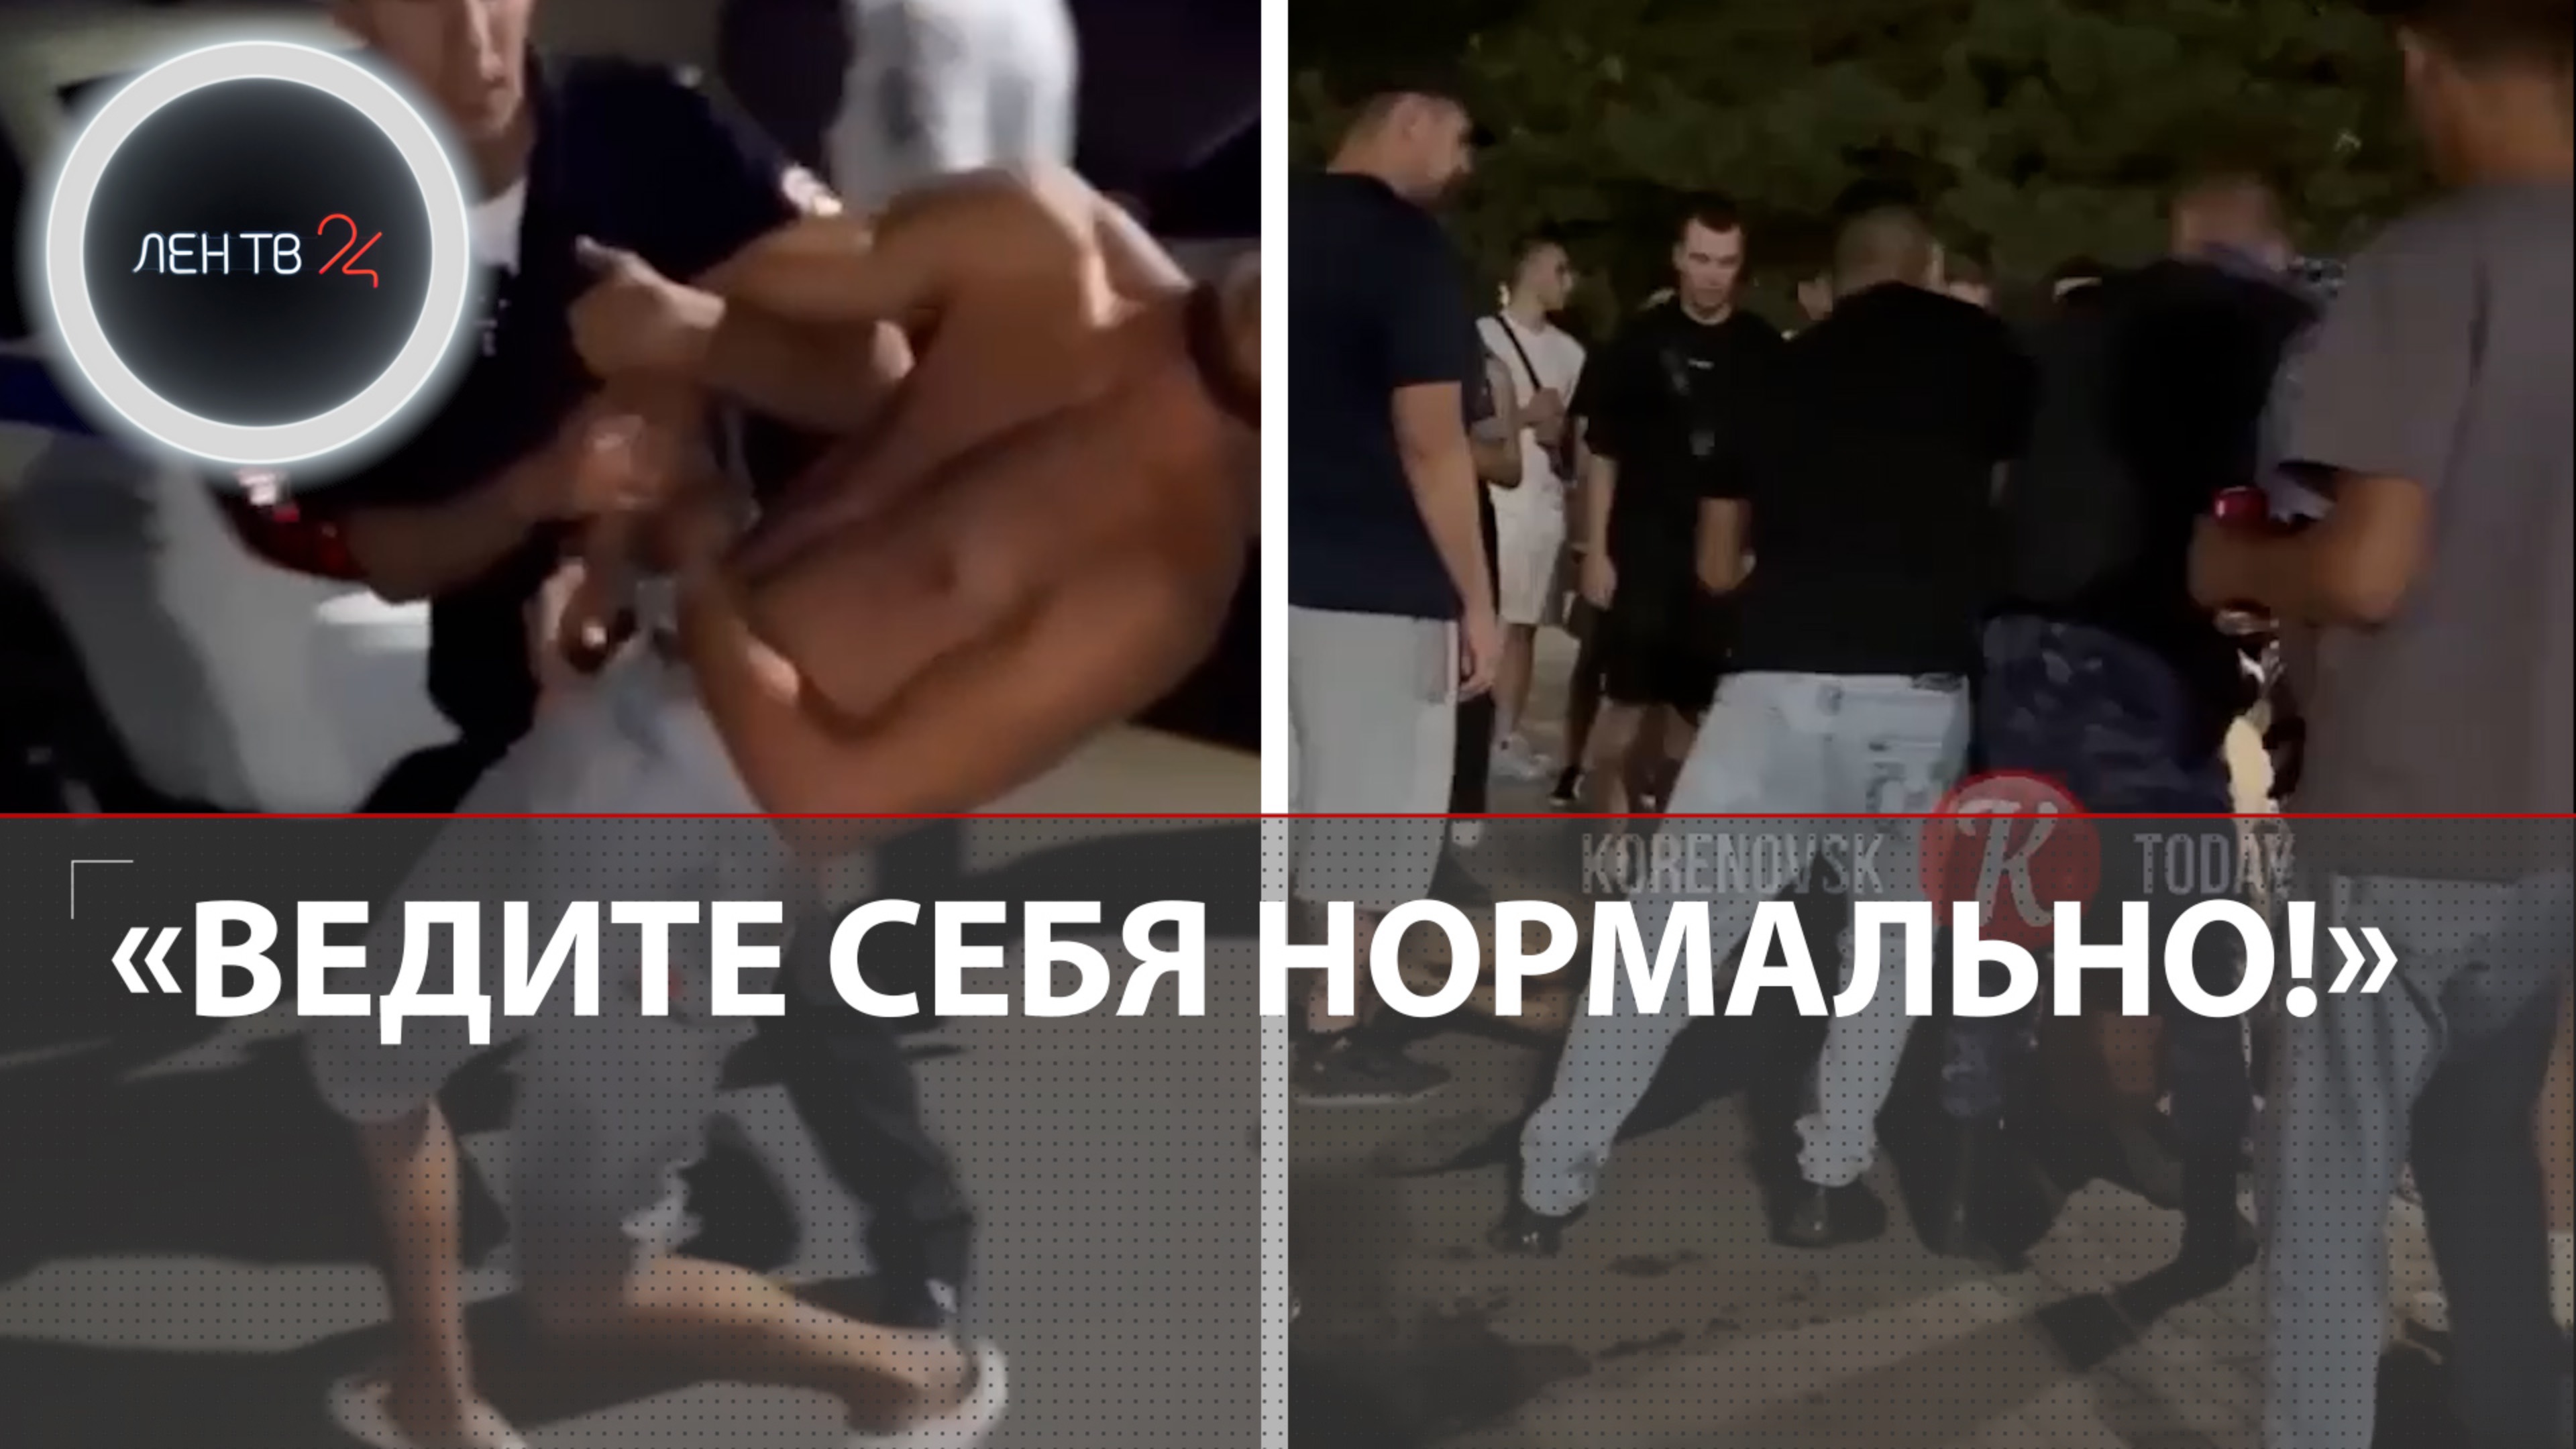 Конфликт в Кореновске: драка, уголовное дело и шествие | "Русская община" заявила, что непричастна